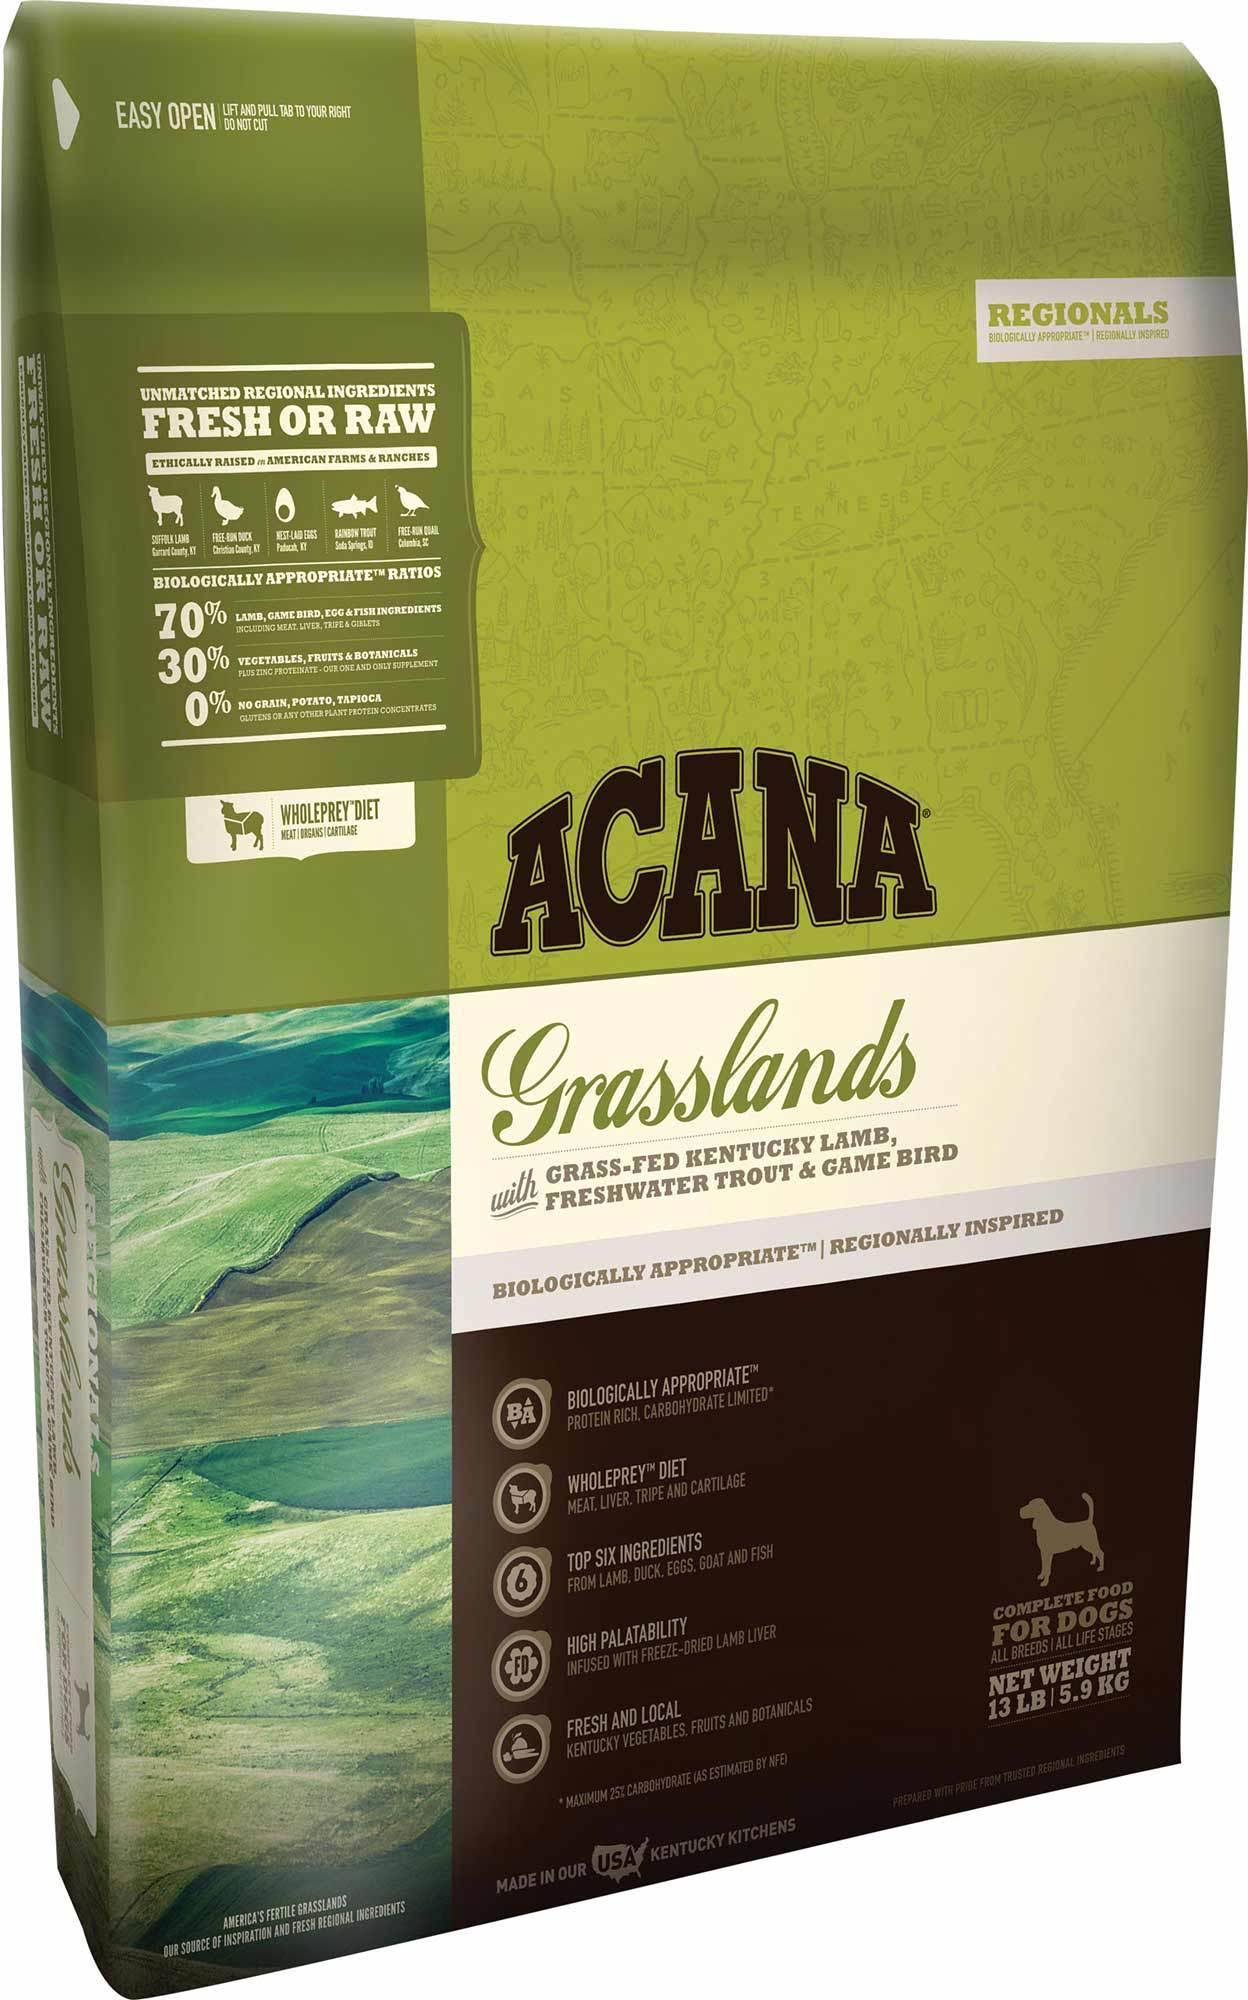 Acana Grasslands Grain-Free Dry Dog Food - 25 lb. Bag